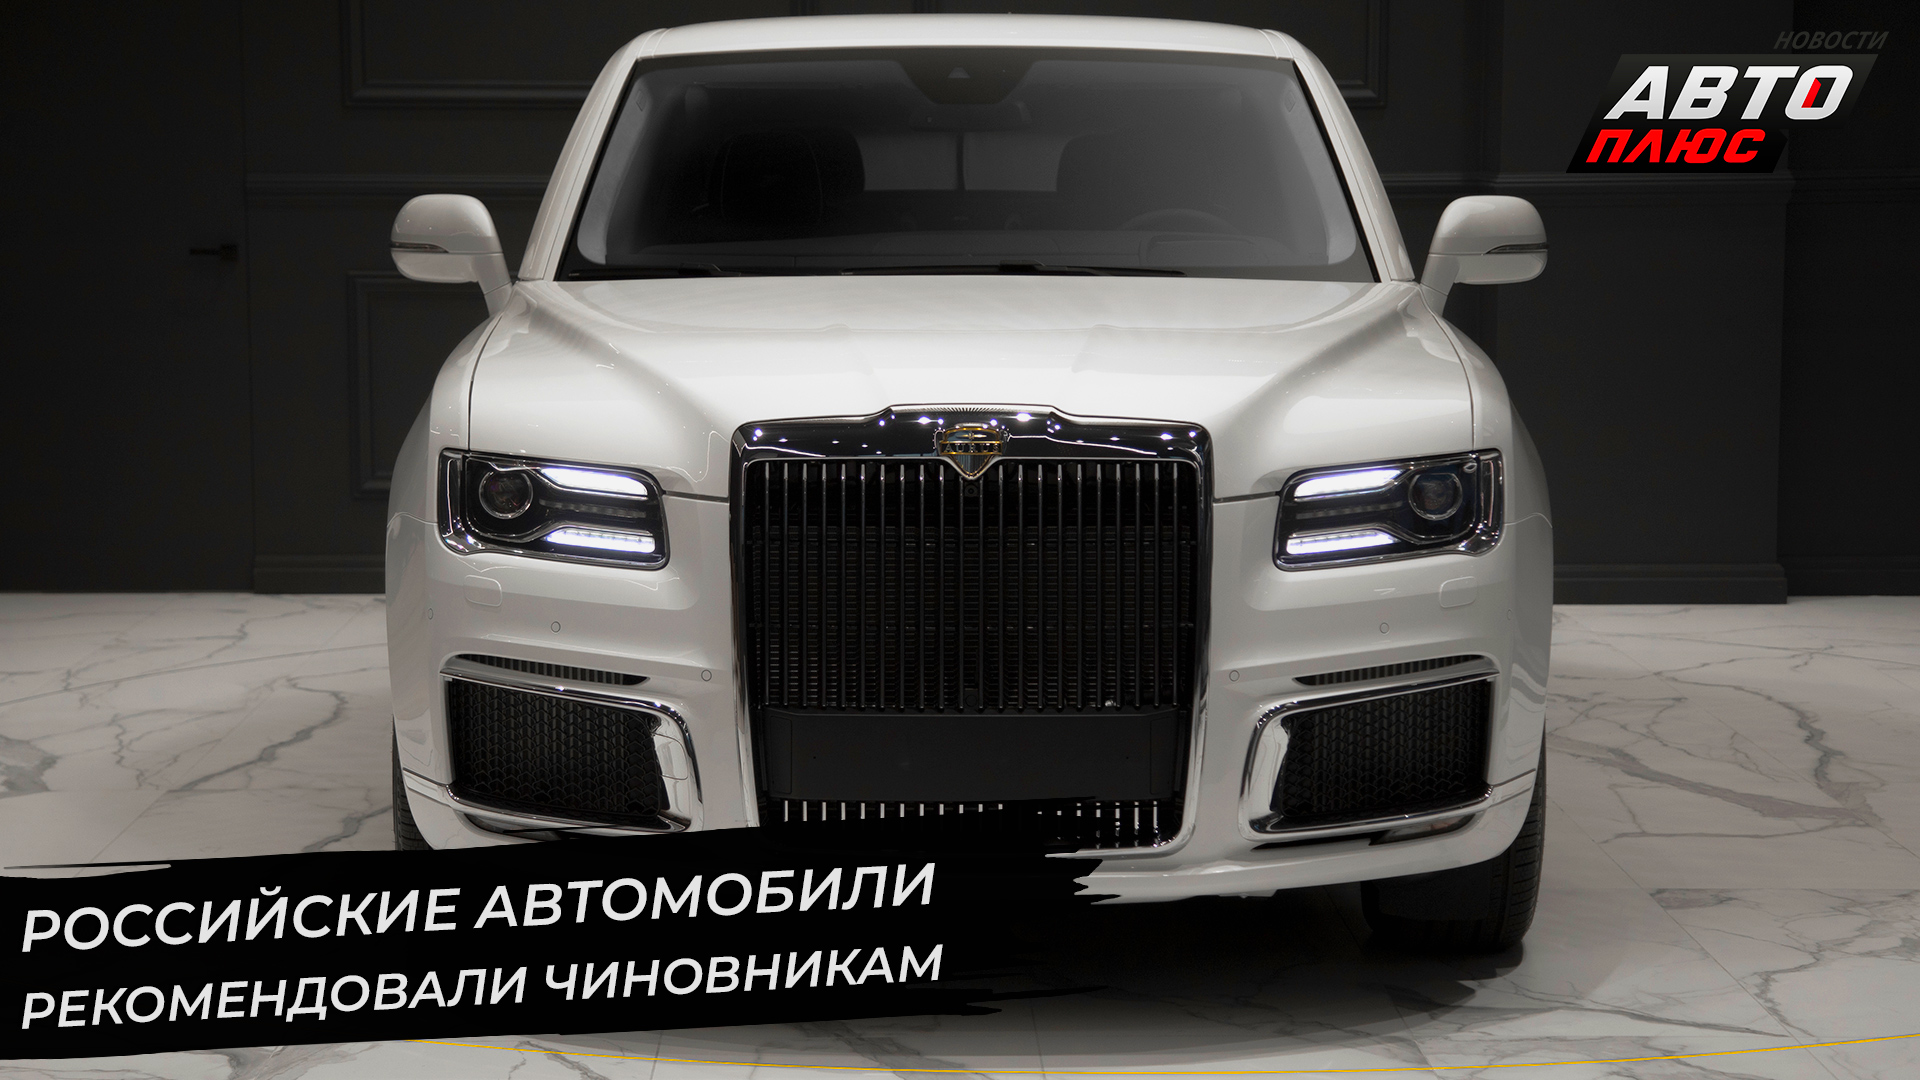 Российские автомобили рекомендовали чиновникам. «Квадратные» номера разрешены спереди | НК №2703